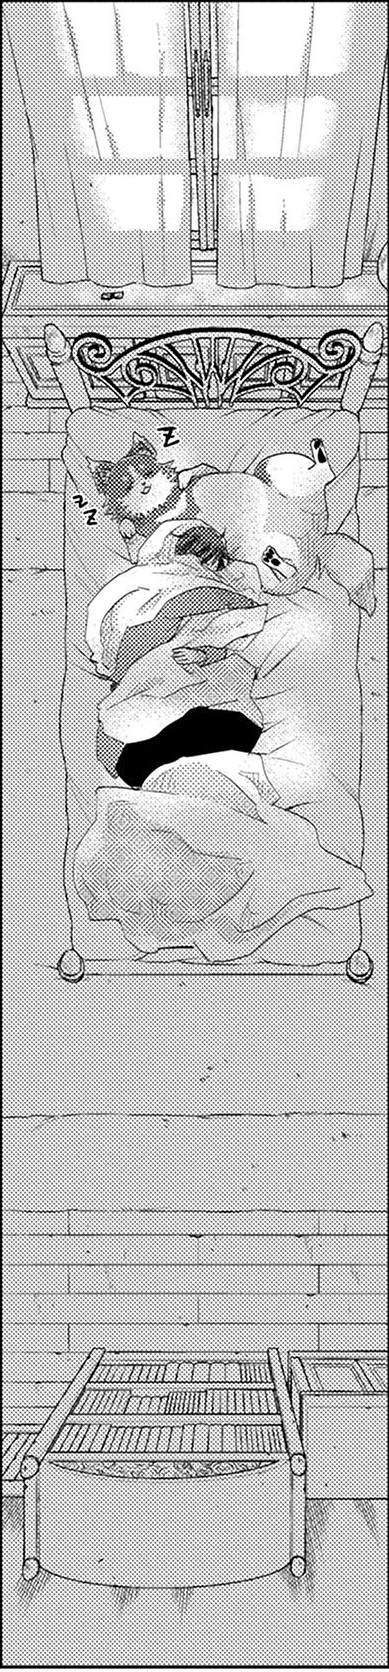 Asley Manga Chapter 11 Page 19-1